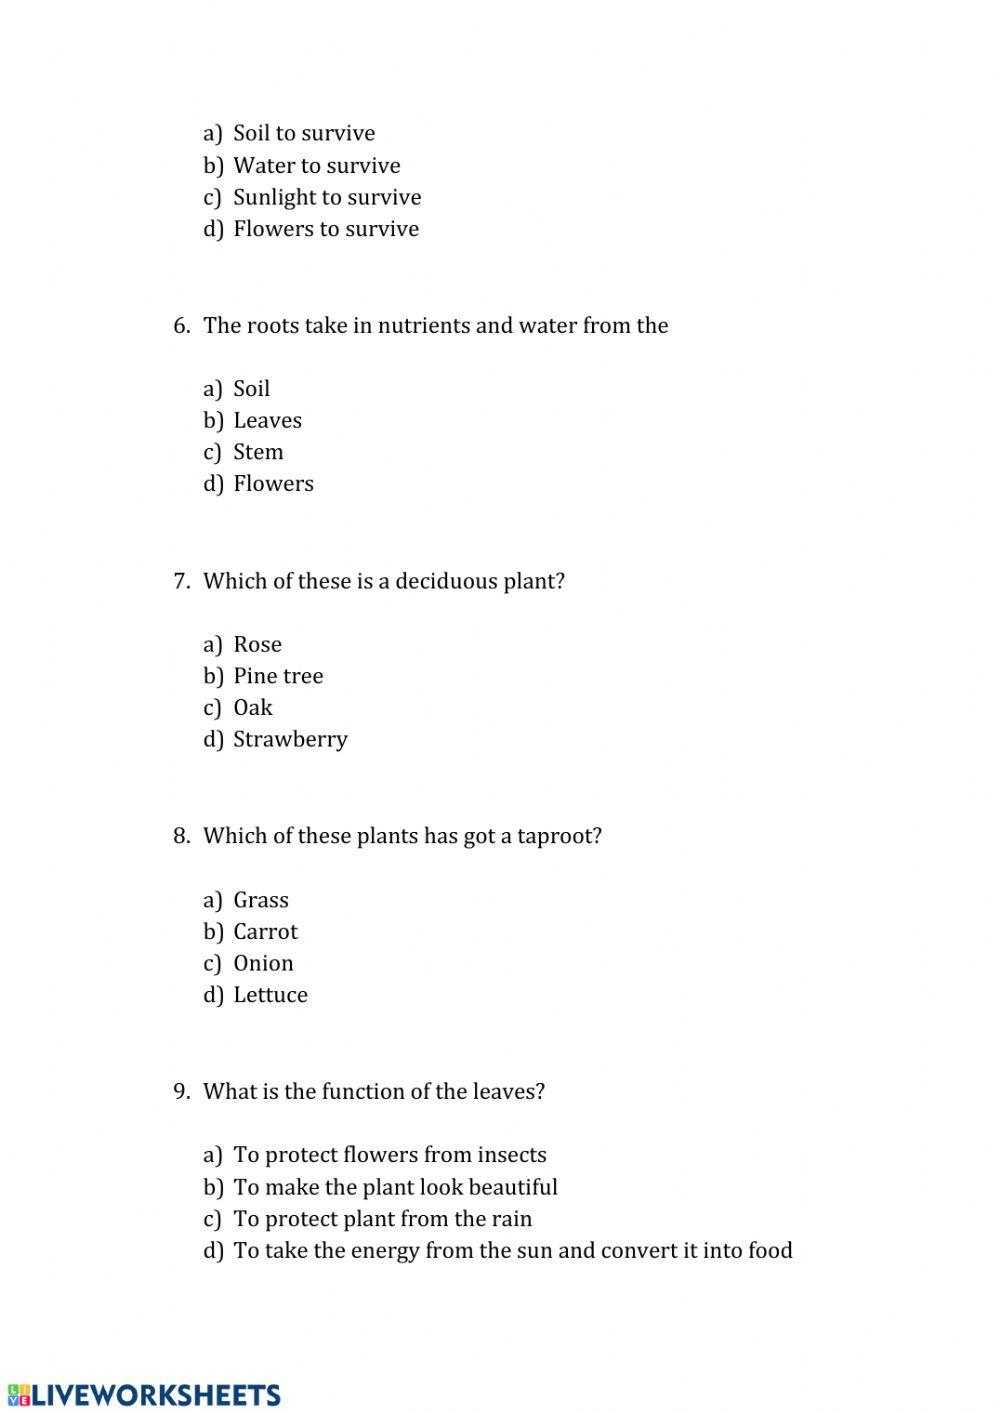 Quiz about plants